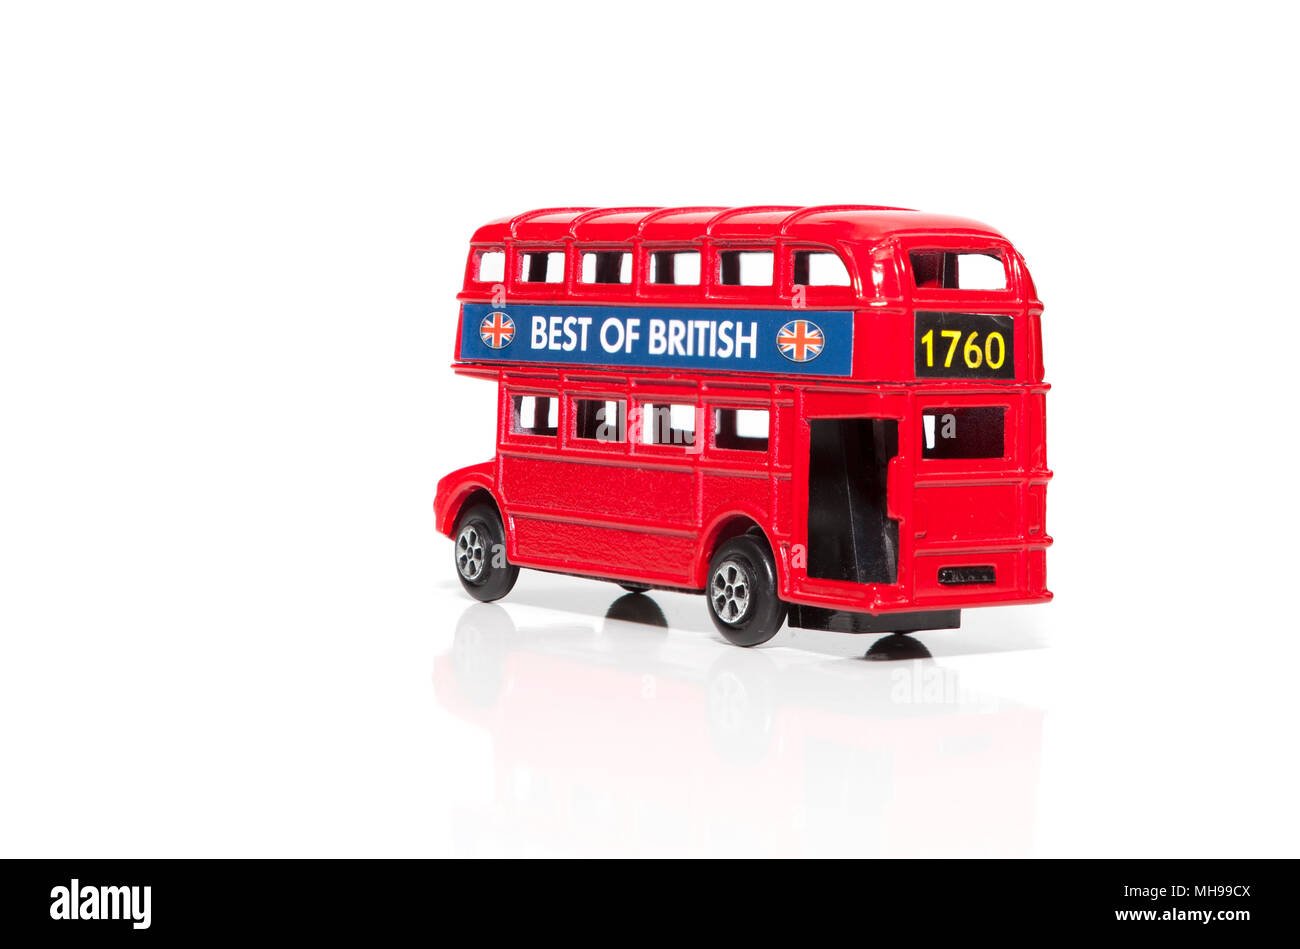 Un bus rouge de Londres Doubledecker Isolé sur fond blanc Banque D'Images